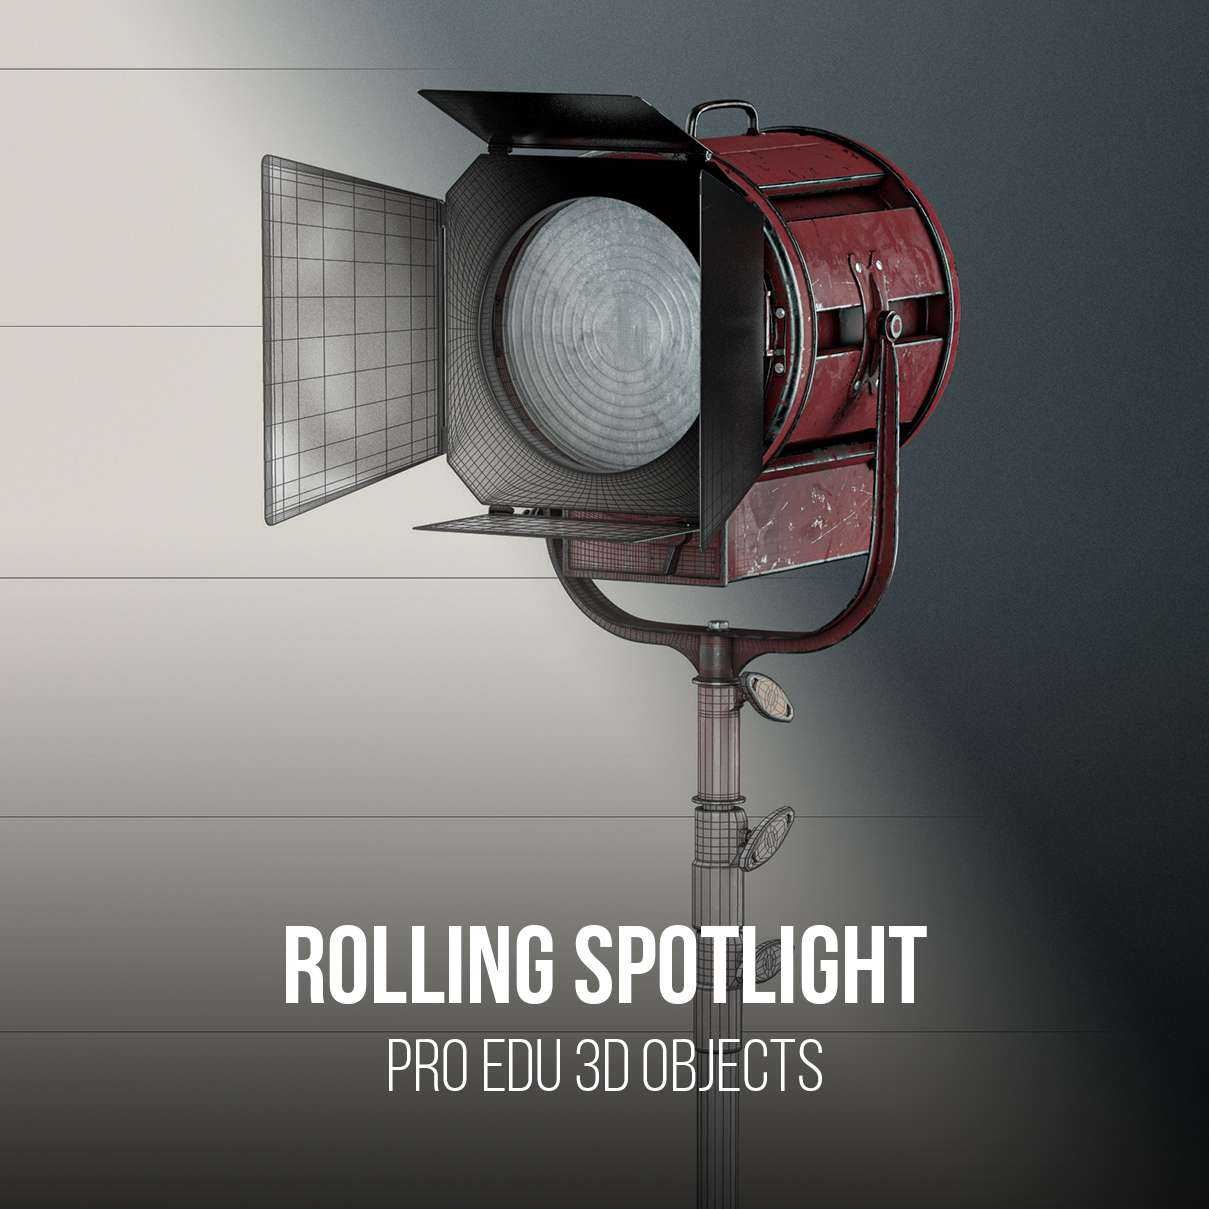 Mole Richardson Rolling Spotlight 3D Model | C4D FBX OBJ CGI - PRO EDU PRO EDU PRO EDU